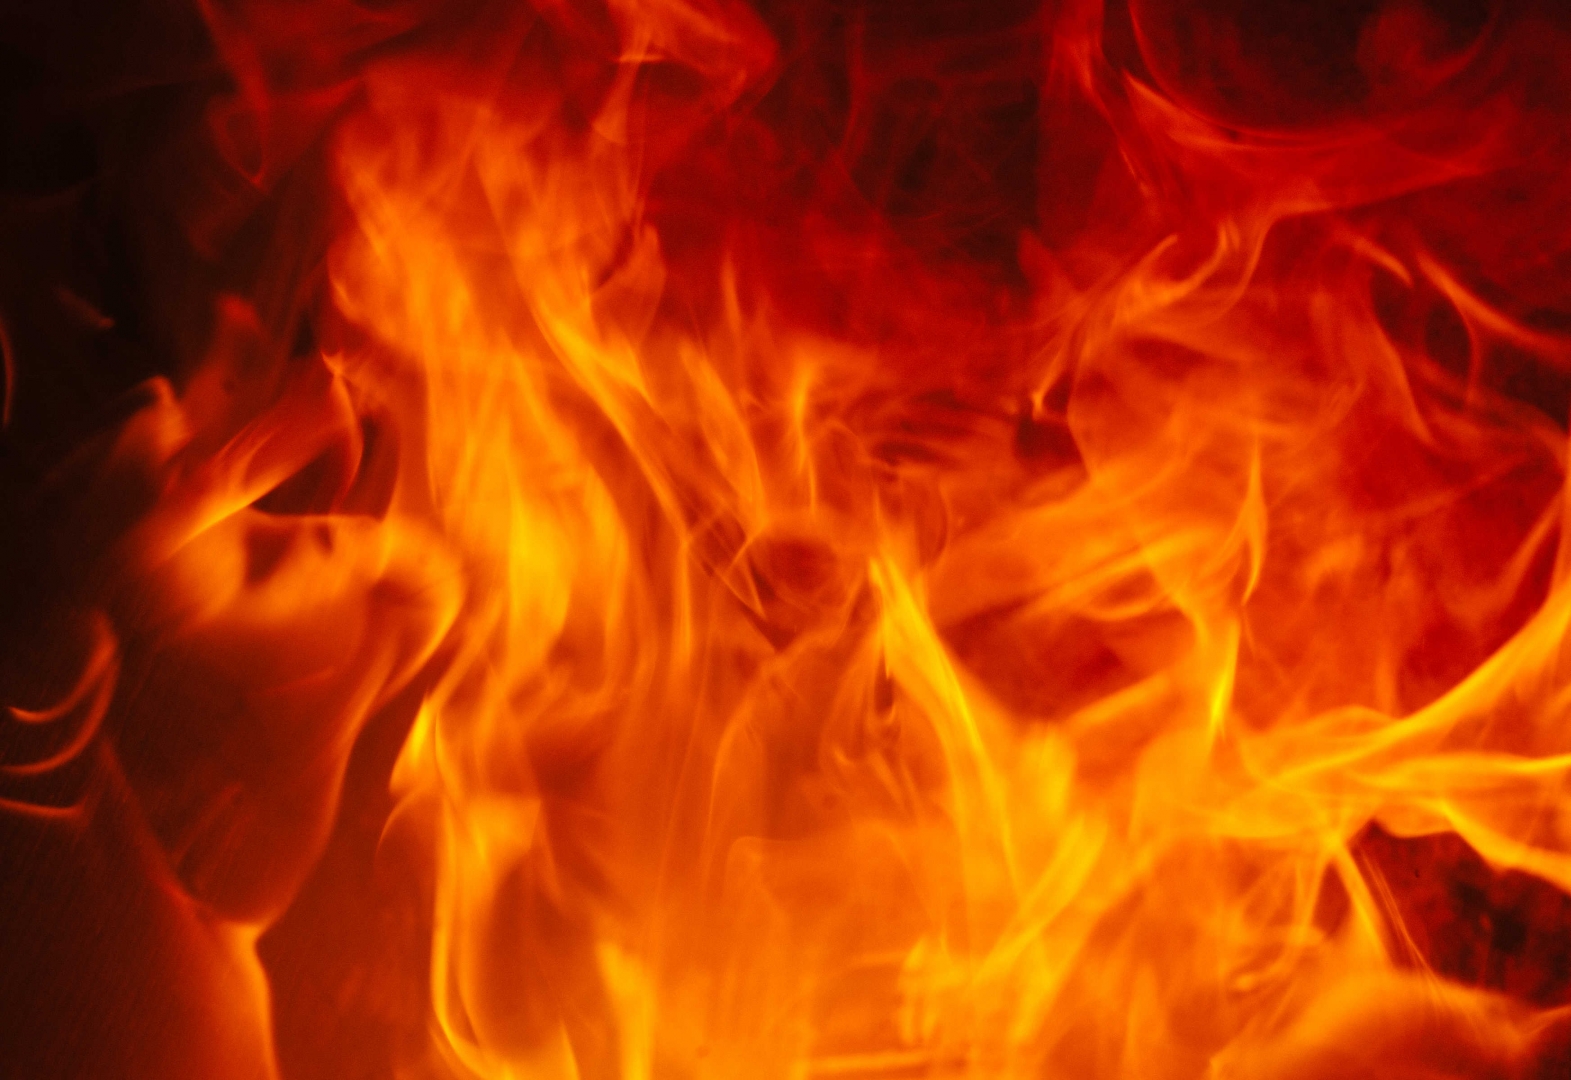 Мужчина пострадал при пожаре на даче в Нерюнгри